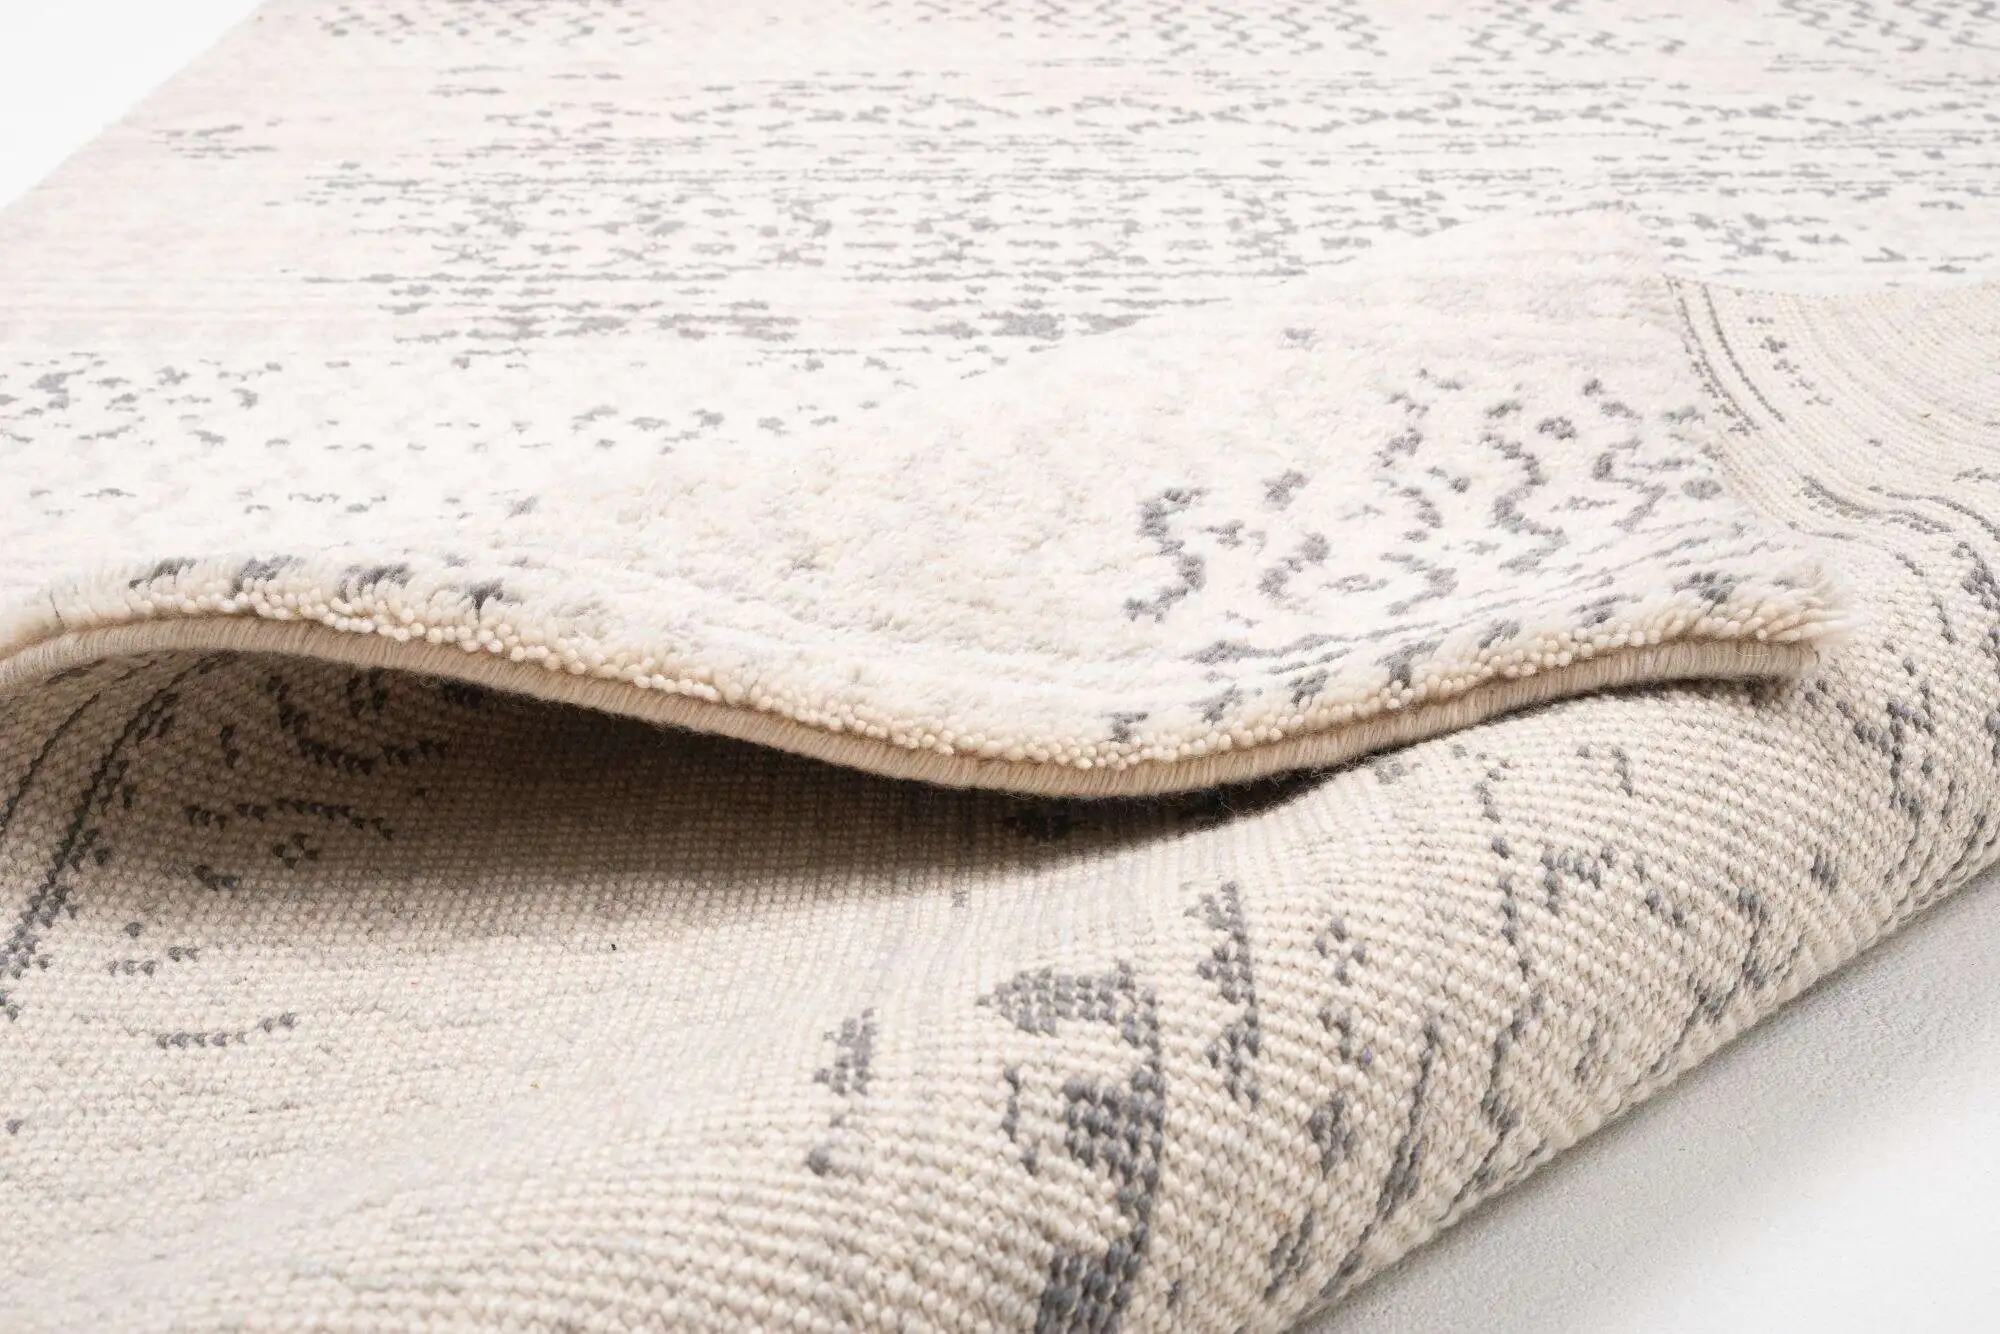 Vintage Design Teppich Soho Handgeknüpft Schurwolle beige 160x230cm